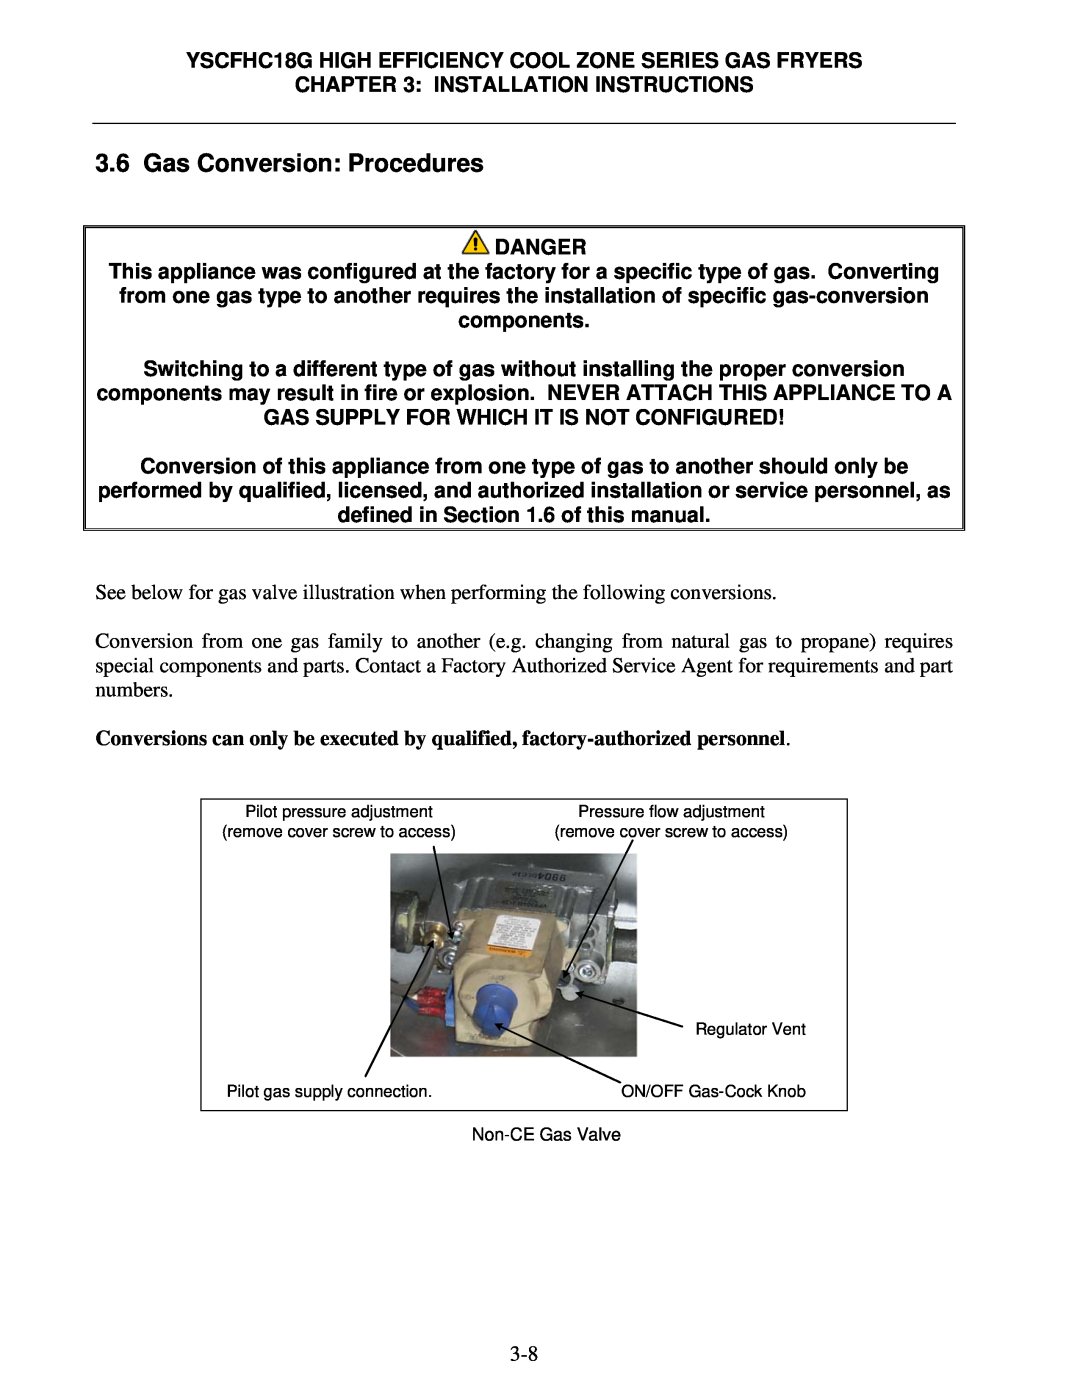 Frymaster *8196329* manual Gas Conversion Procedures 